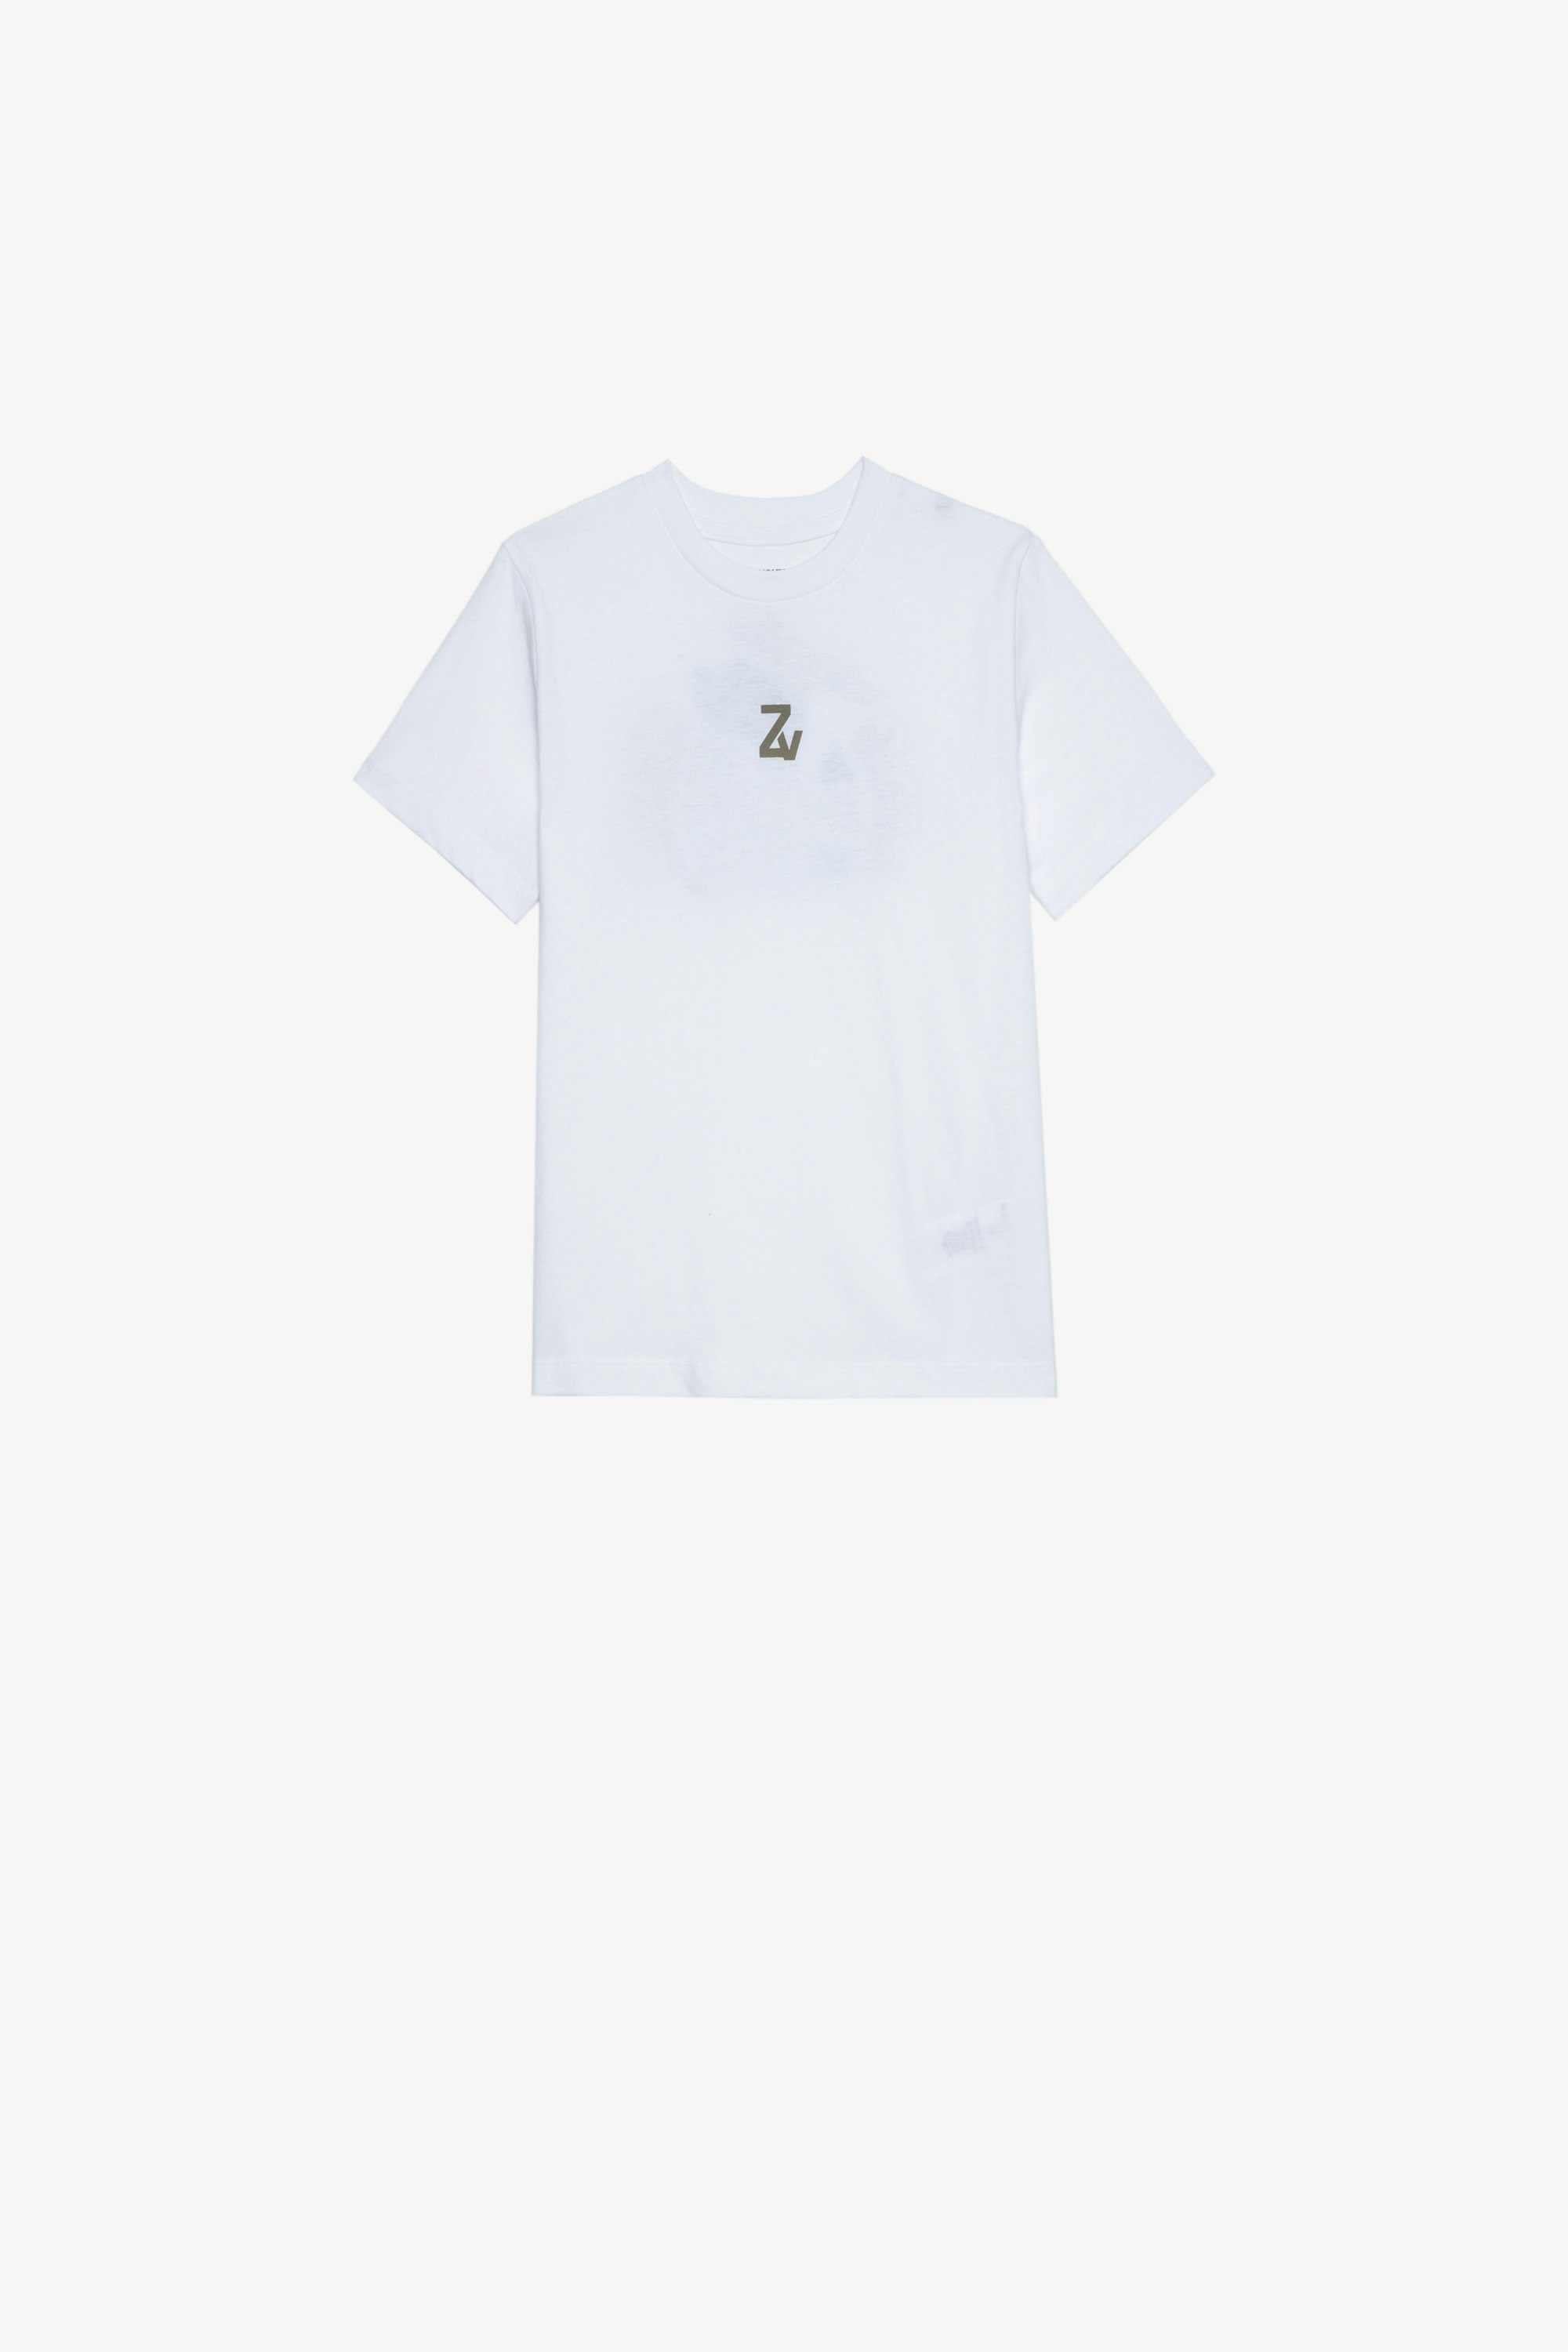 Camiseta Kita Infantil Camiseta blanca de algodón de manga corta infantil con estampados en la parte delantera y trasera